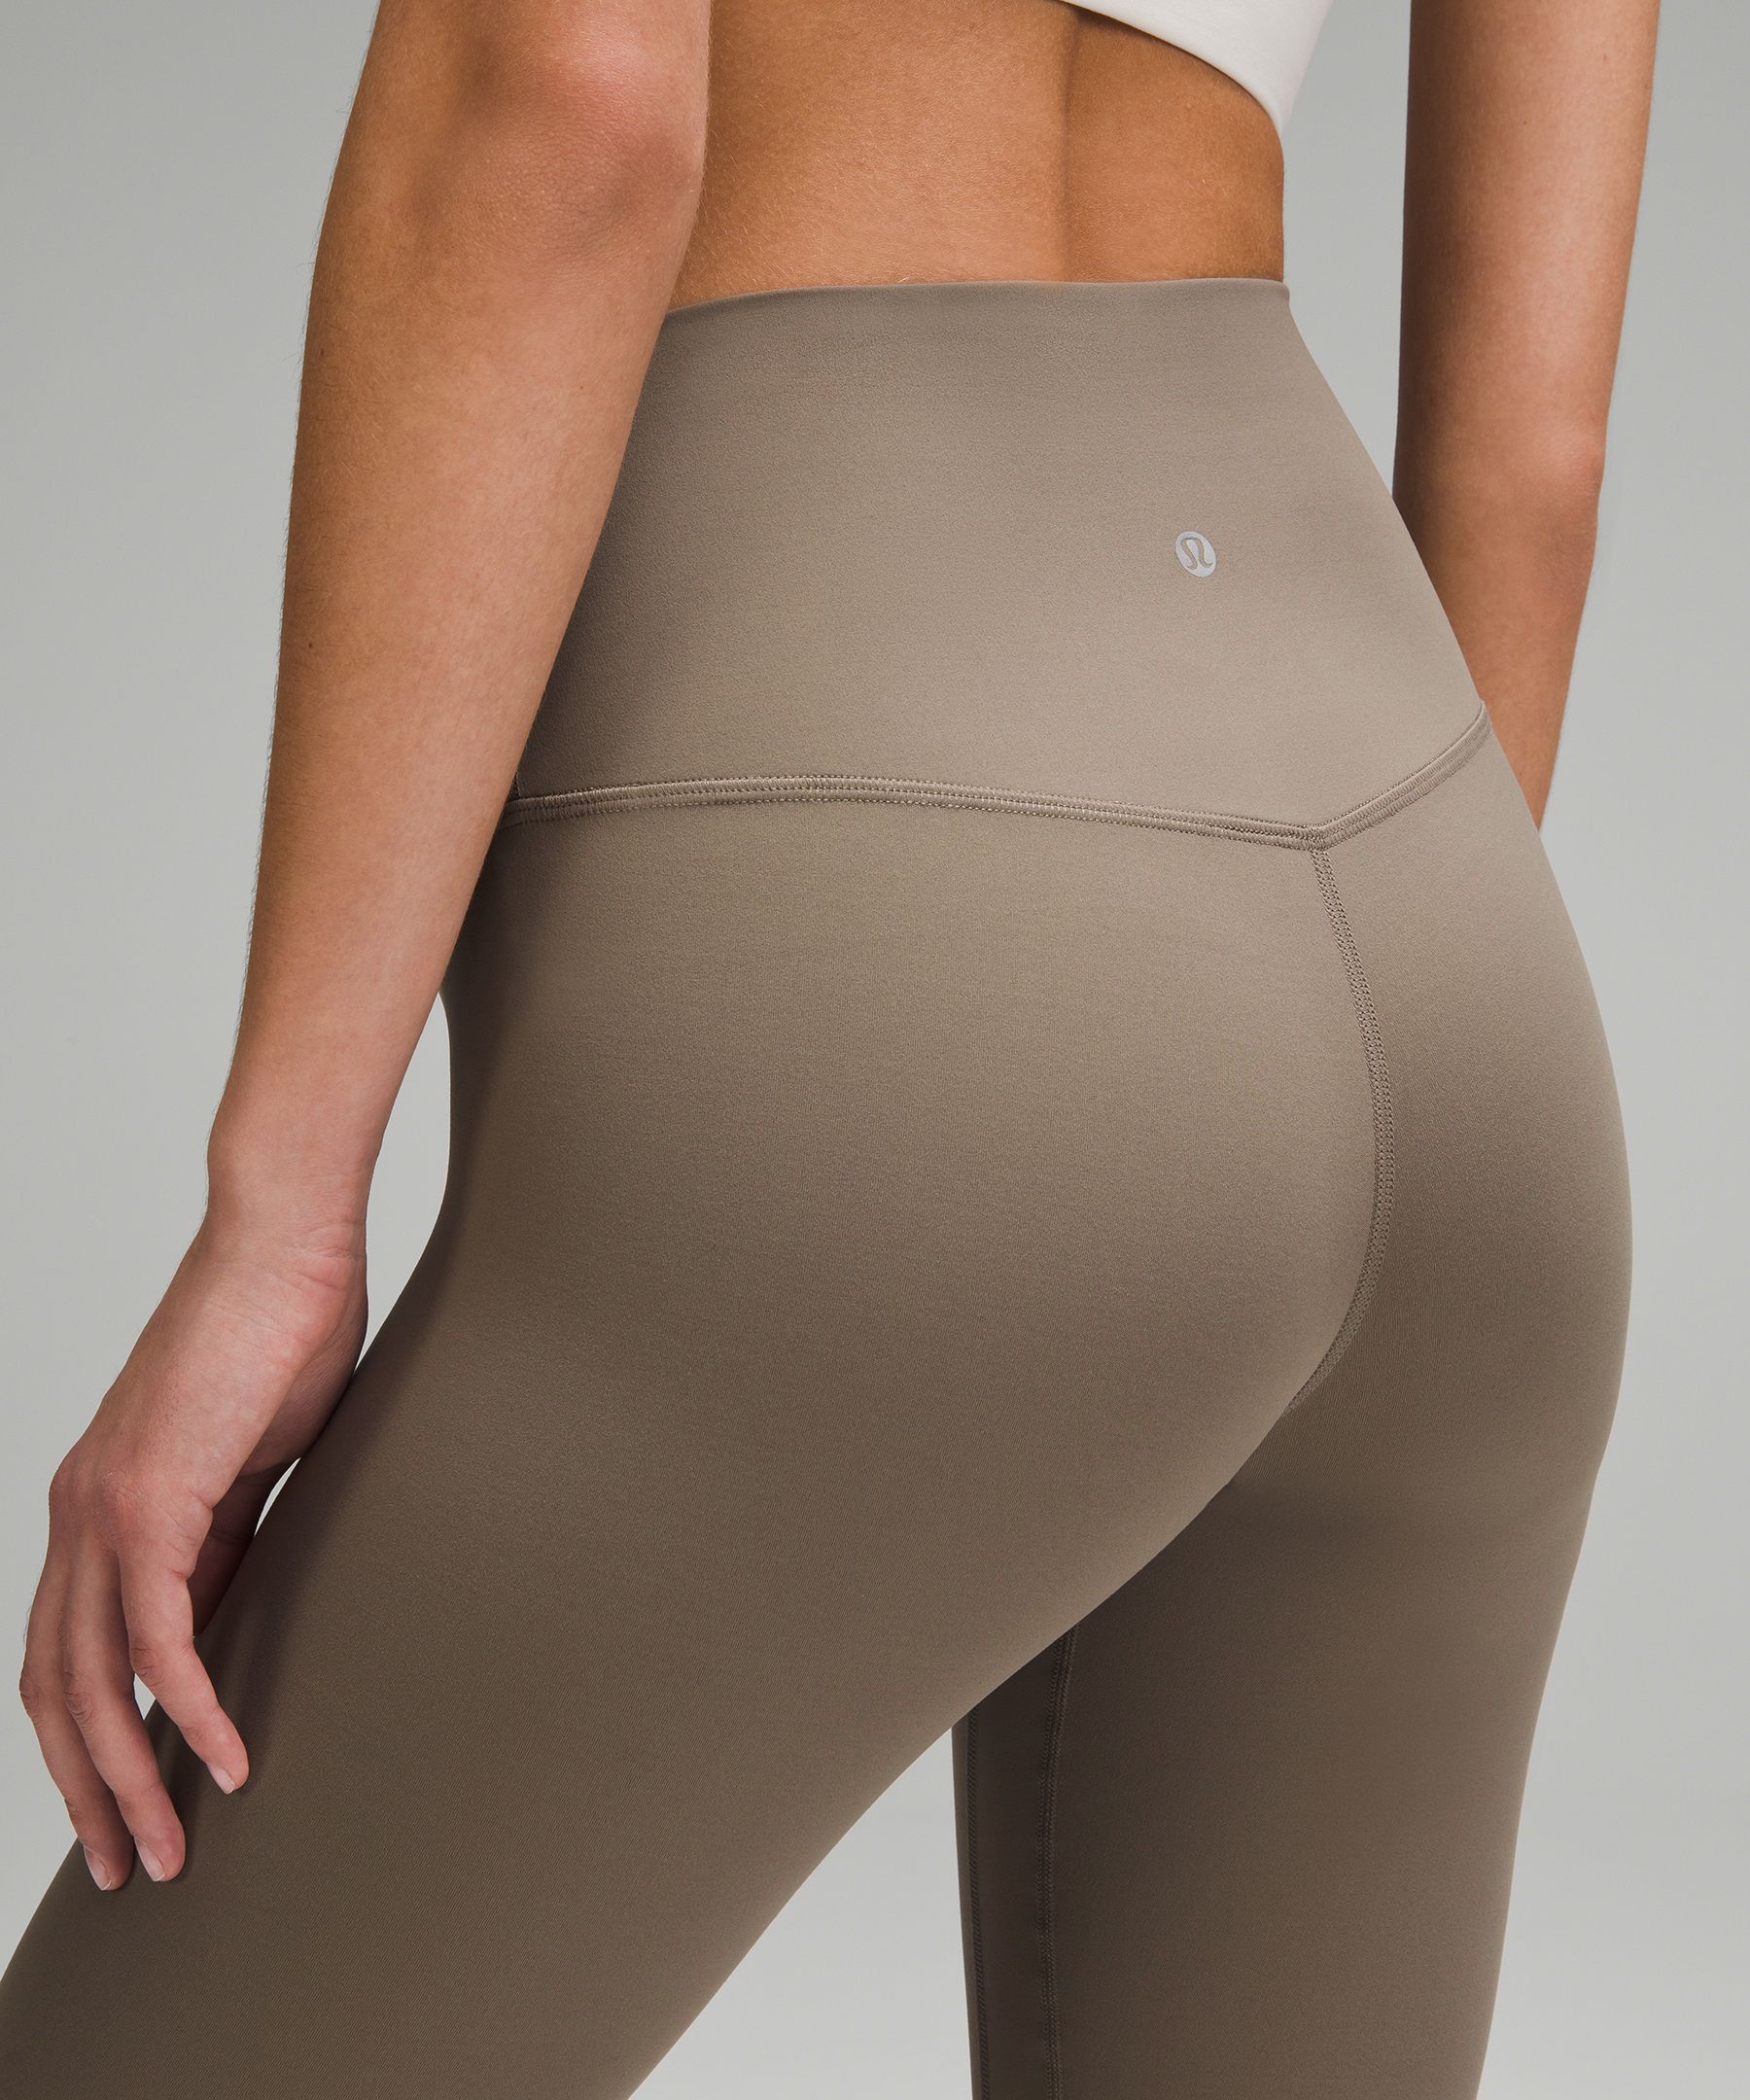 Lululemon Women's Align Pant leggings 30” t30416 Black White Print